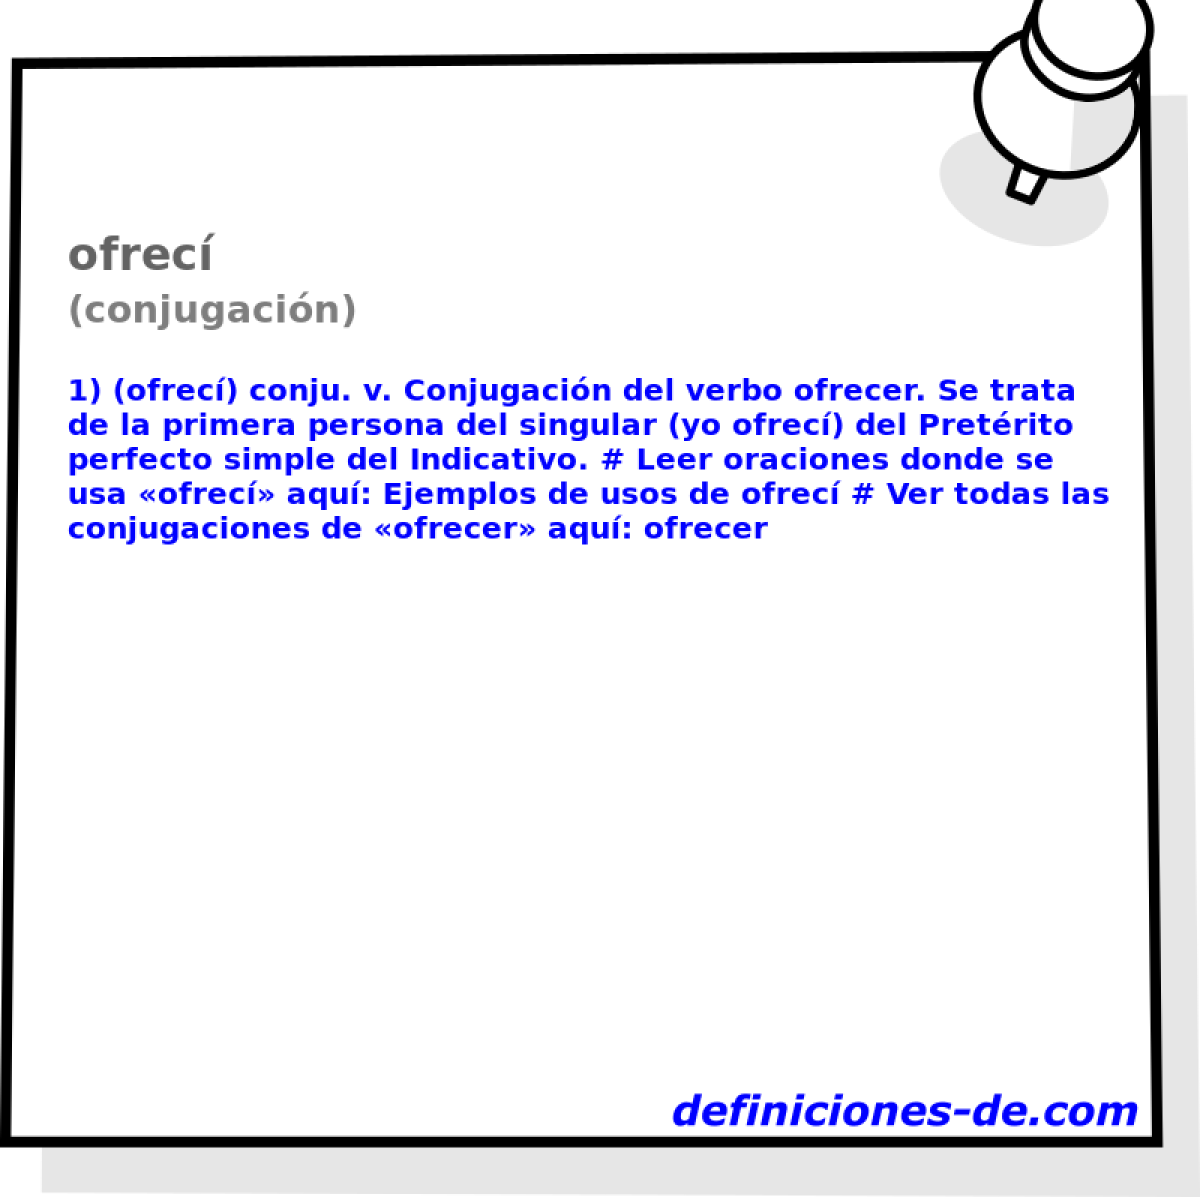 ofrec (conjugacin)